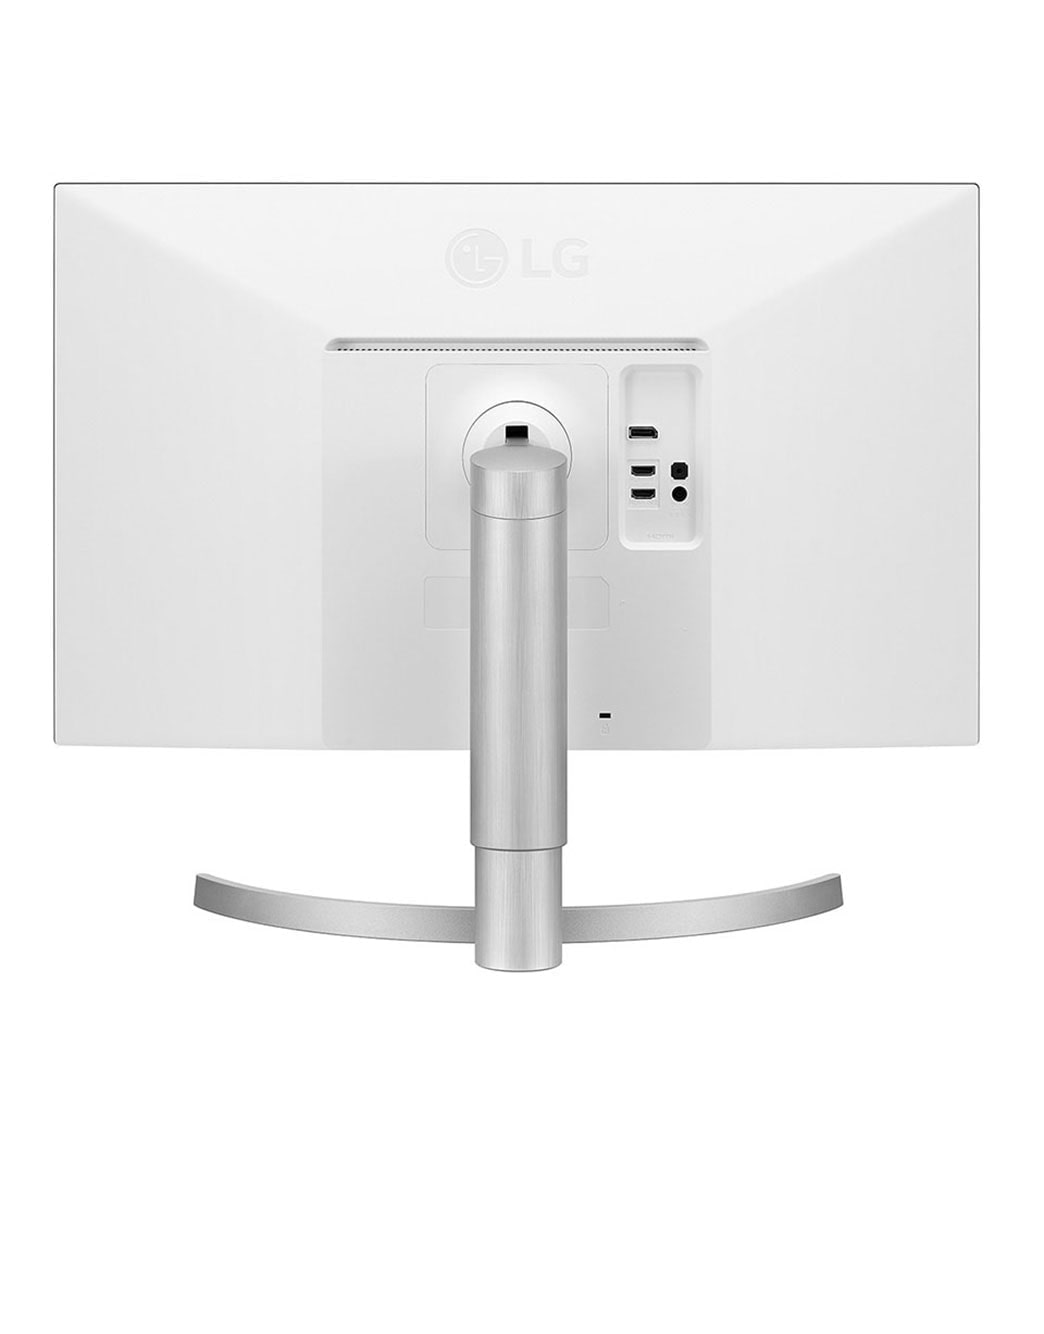 27'' 4K UHD IPS LED HDR Monitor with USB-C port | LG UAE